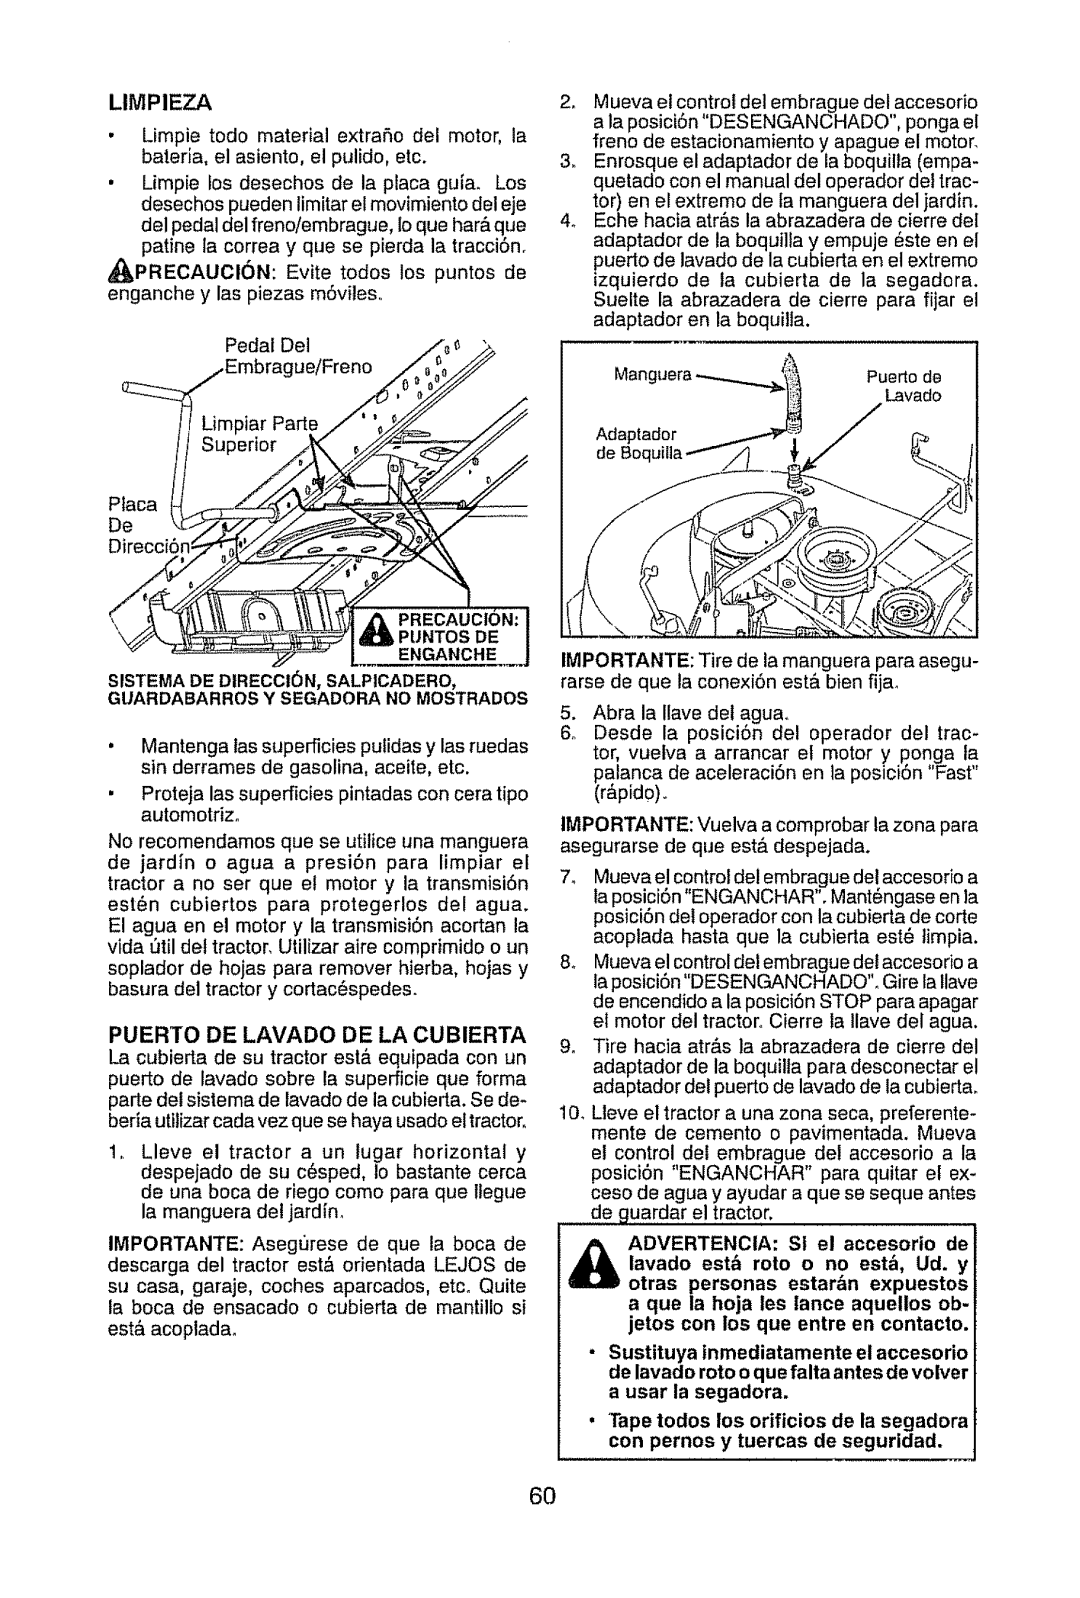 Craftsman 917.289470 manual Limpieza, Puerto De Lavado De La Cubierta, Puertode, lavado est_ roto o no est,, Ud. y 